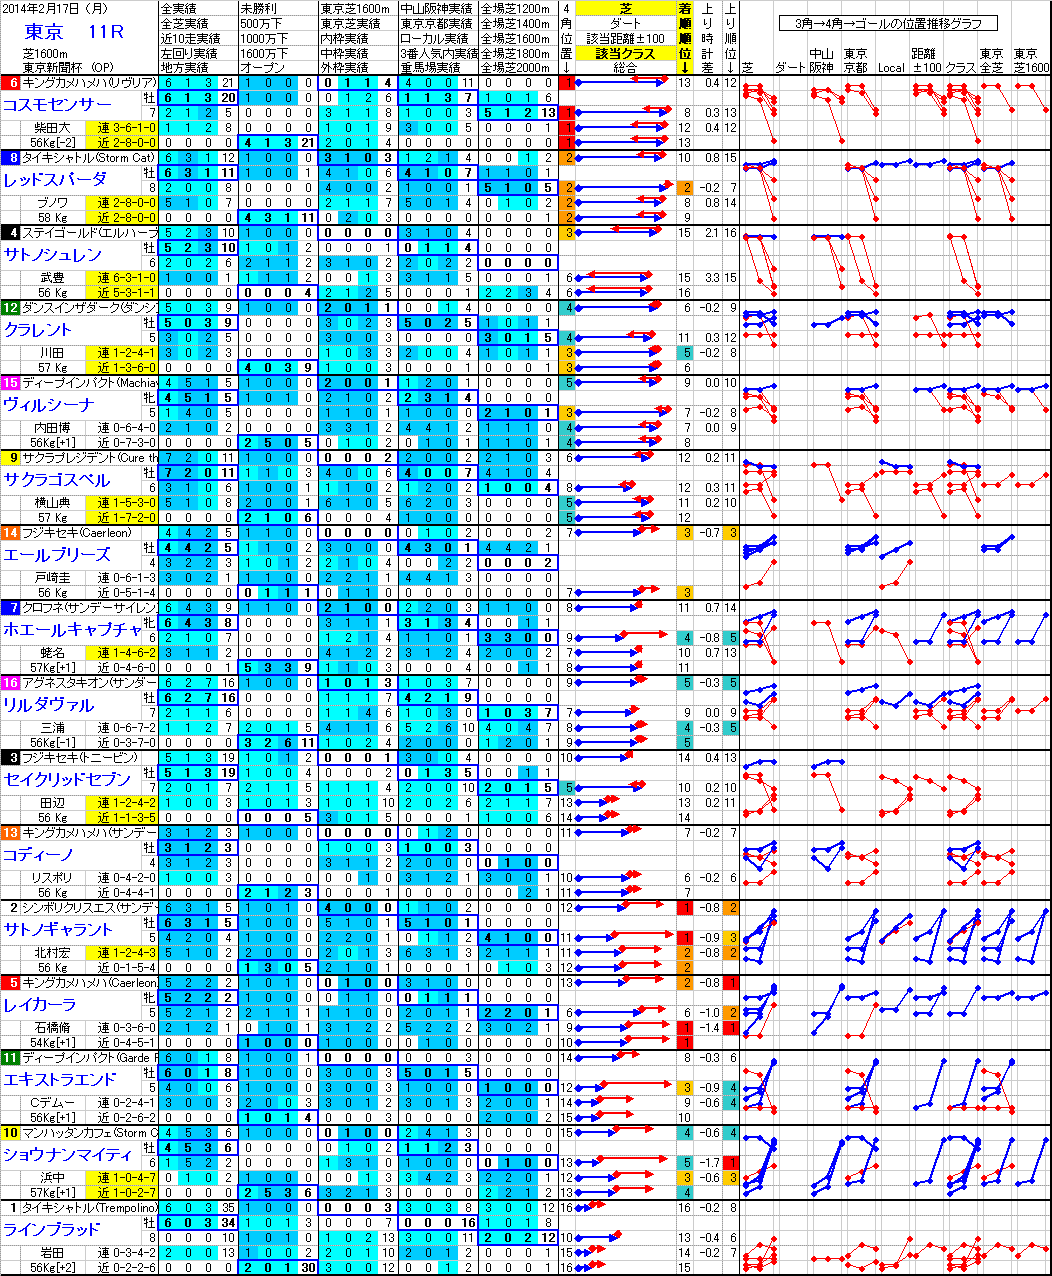 東京 2014年2月17日 （月） ： 11R － 分析データ